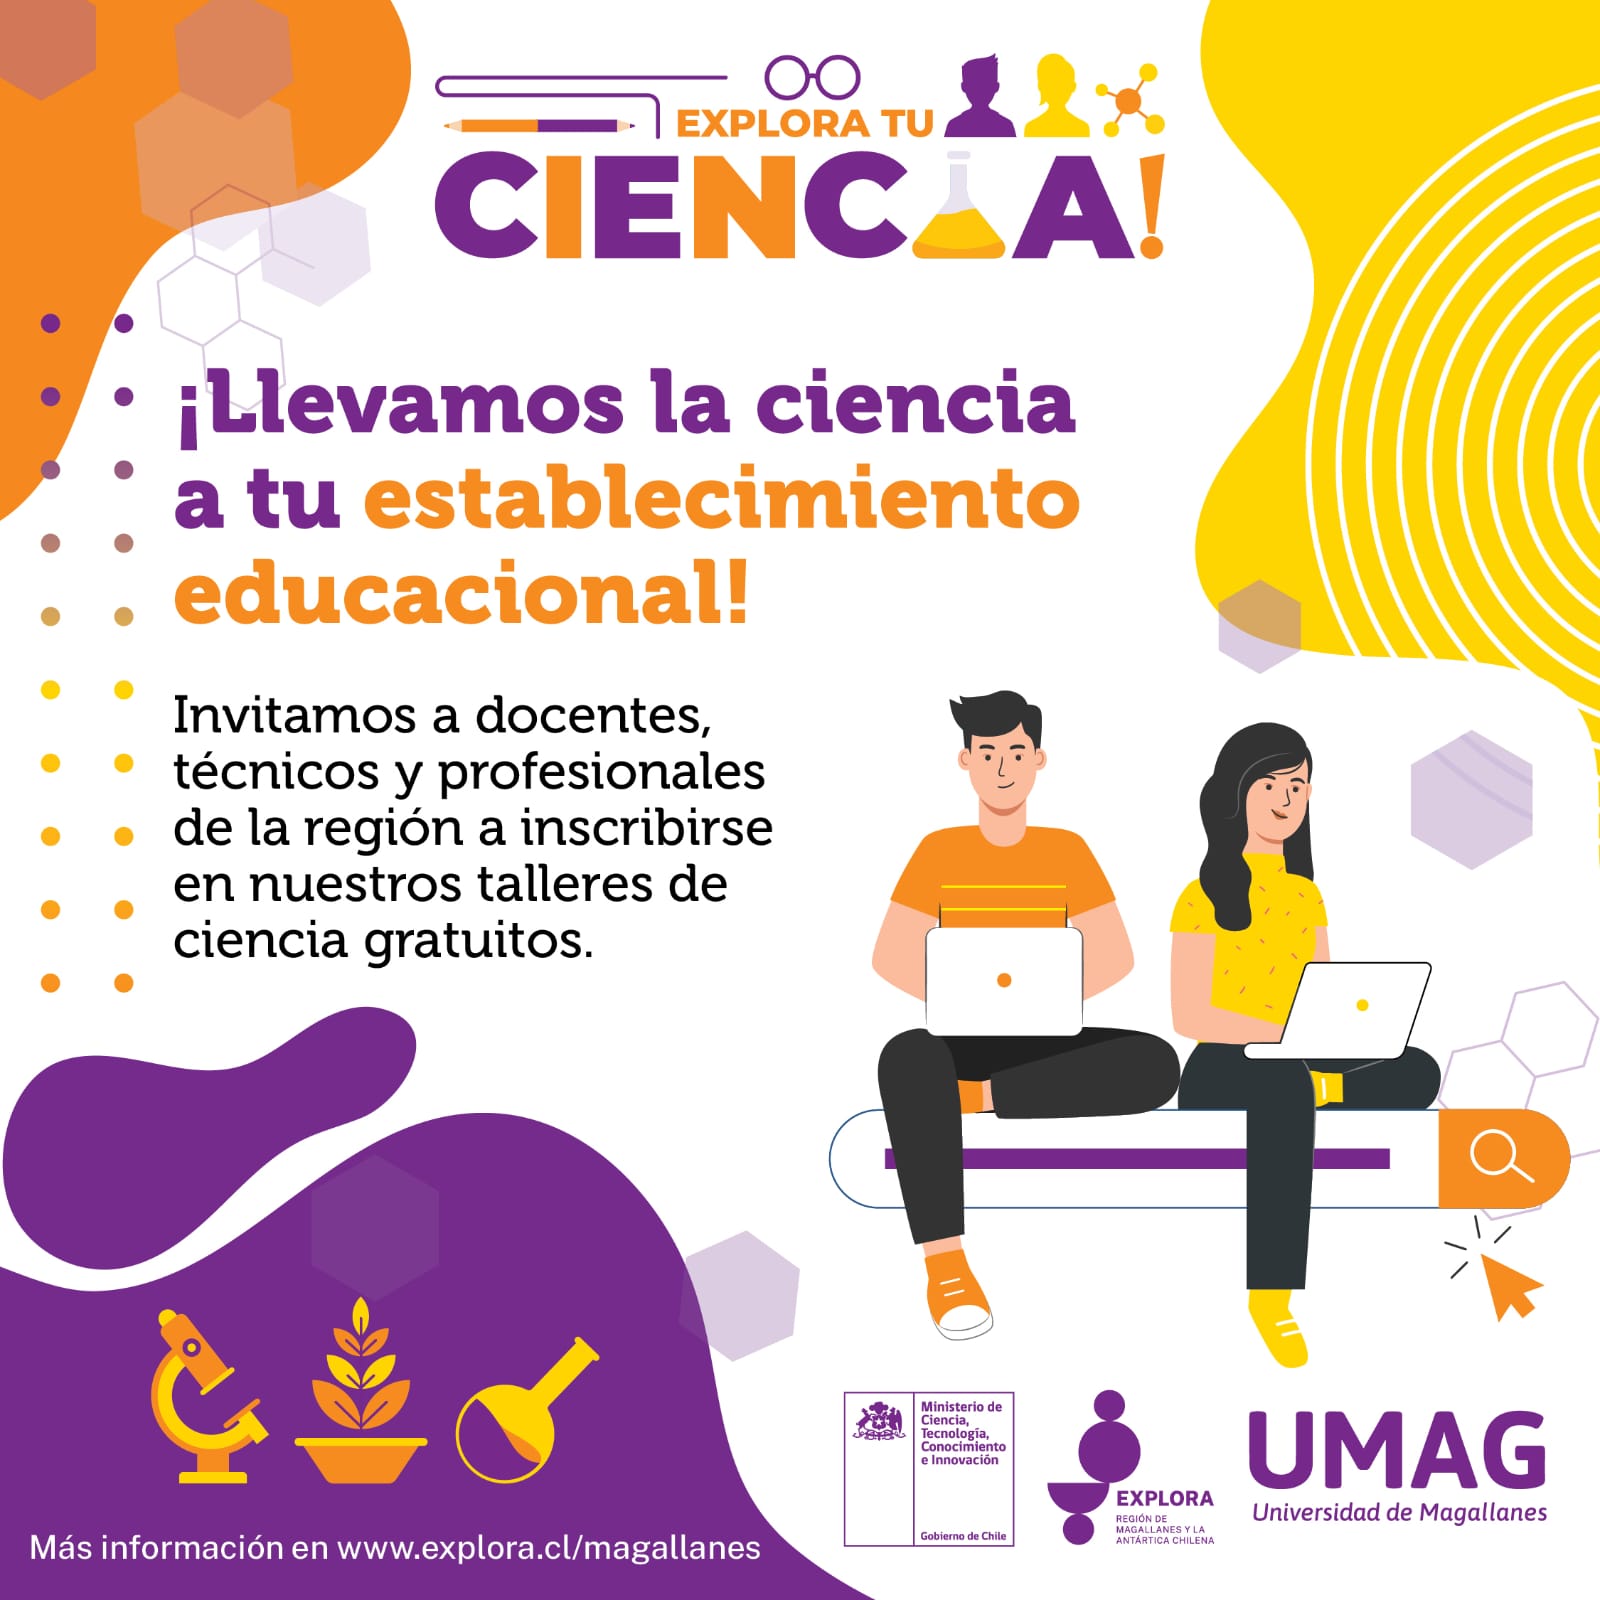 PAR EXPLORA Magallanes invita a docentes, técnicos y profesionales de establecimientos educacionales a inscribirse al instrumento “Explora tu ciencia”